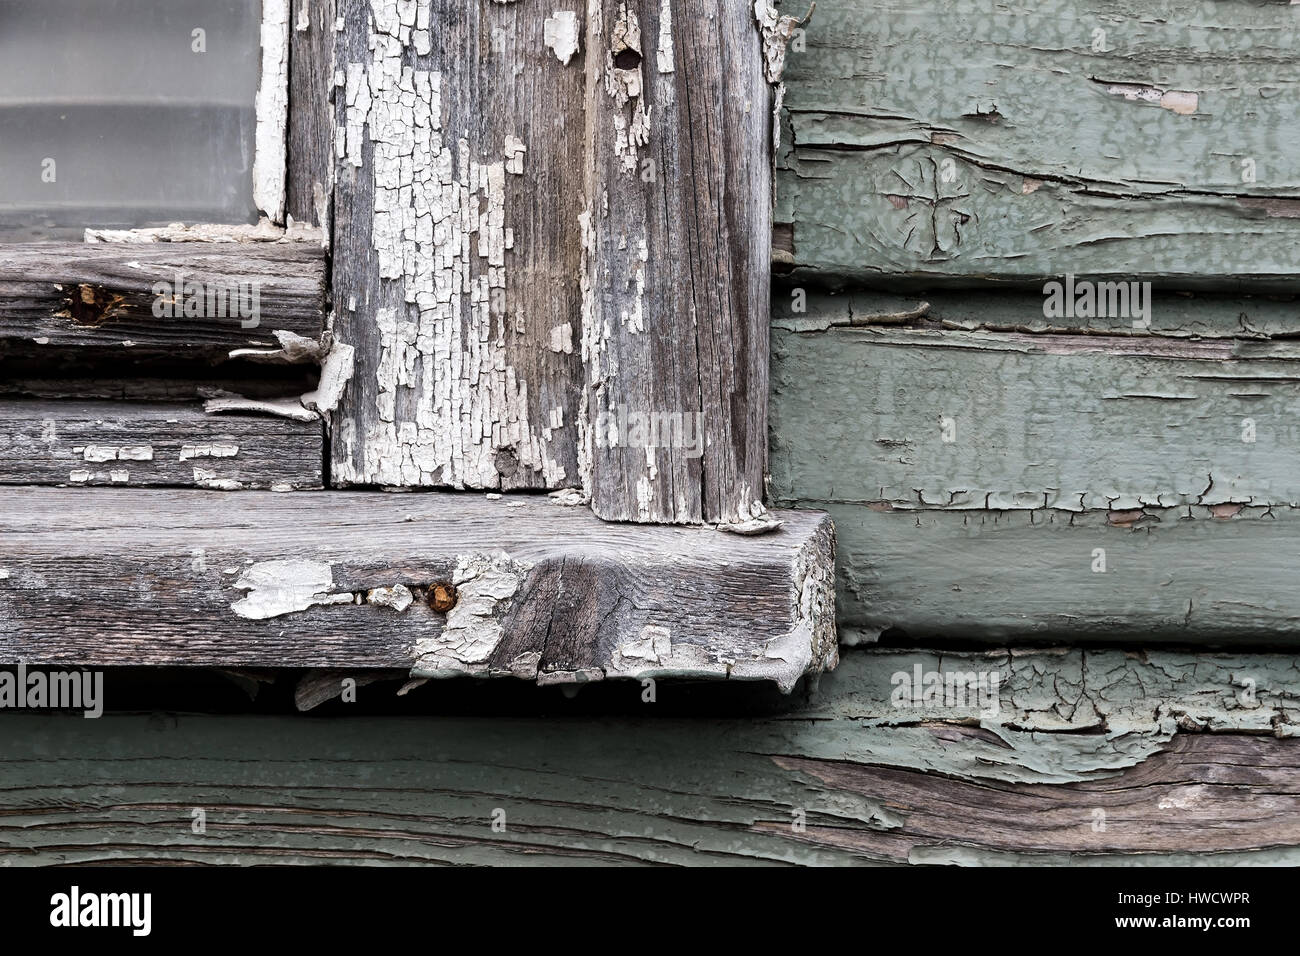 Vieille personne, feuilletée couleur par une fenêtre en bois. Météo, Alte, abgeblätterte Farbe bei einem Holzfenster. Witterung Banque D'Images